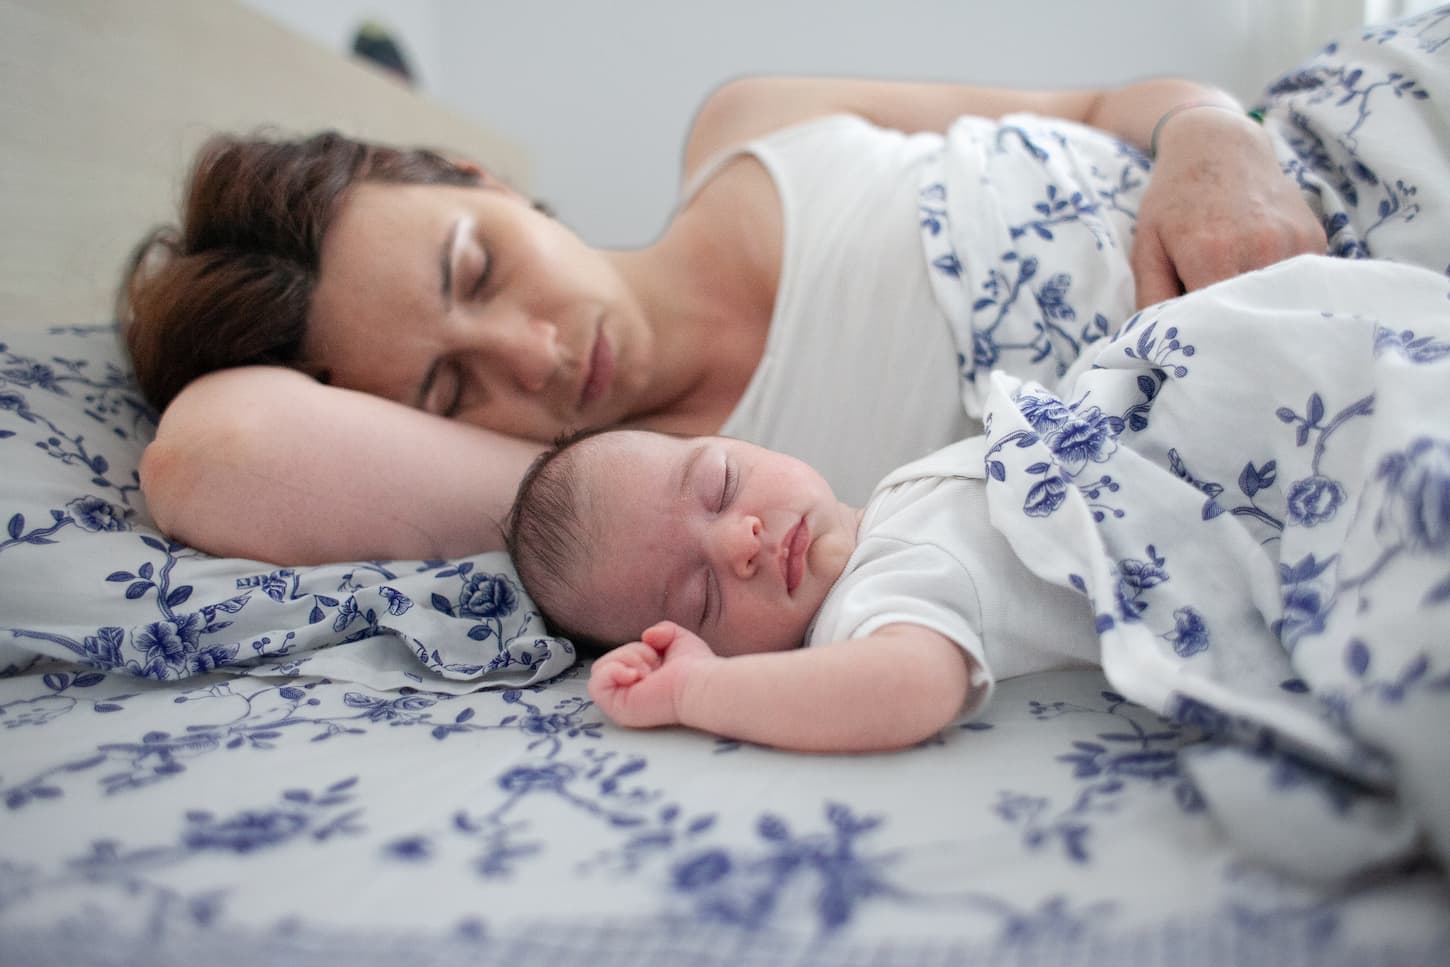 young mother sleeps with her baby 2022 03 02 00 17 00 utc 1